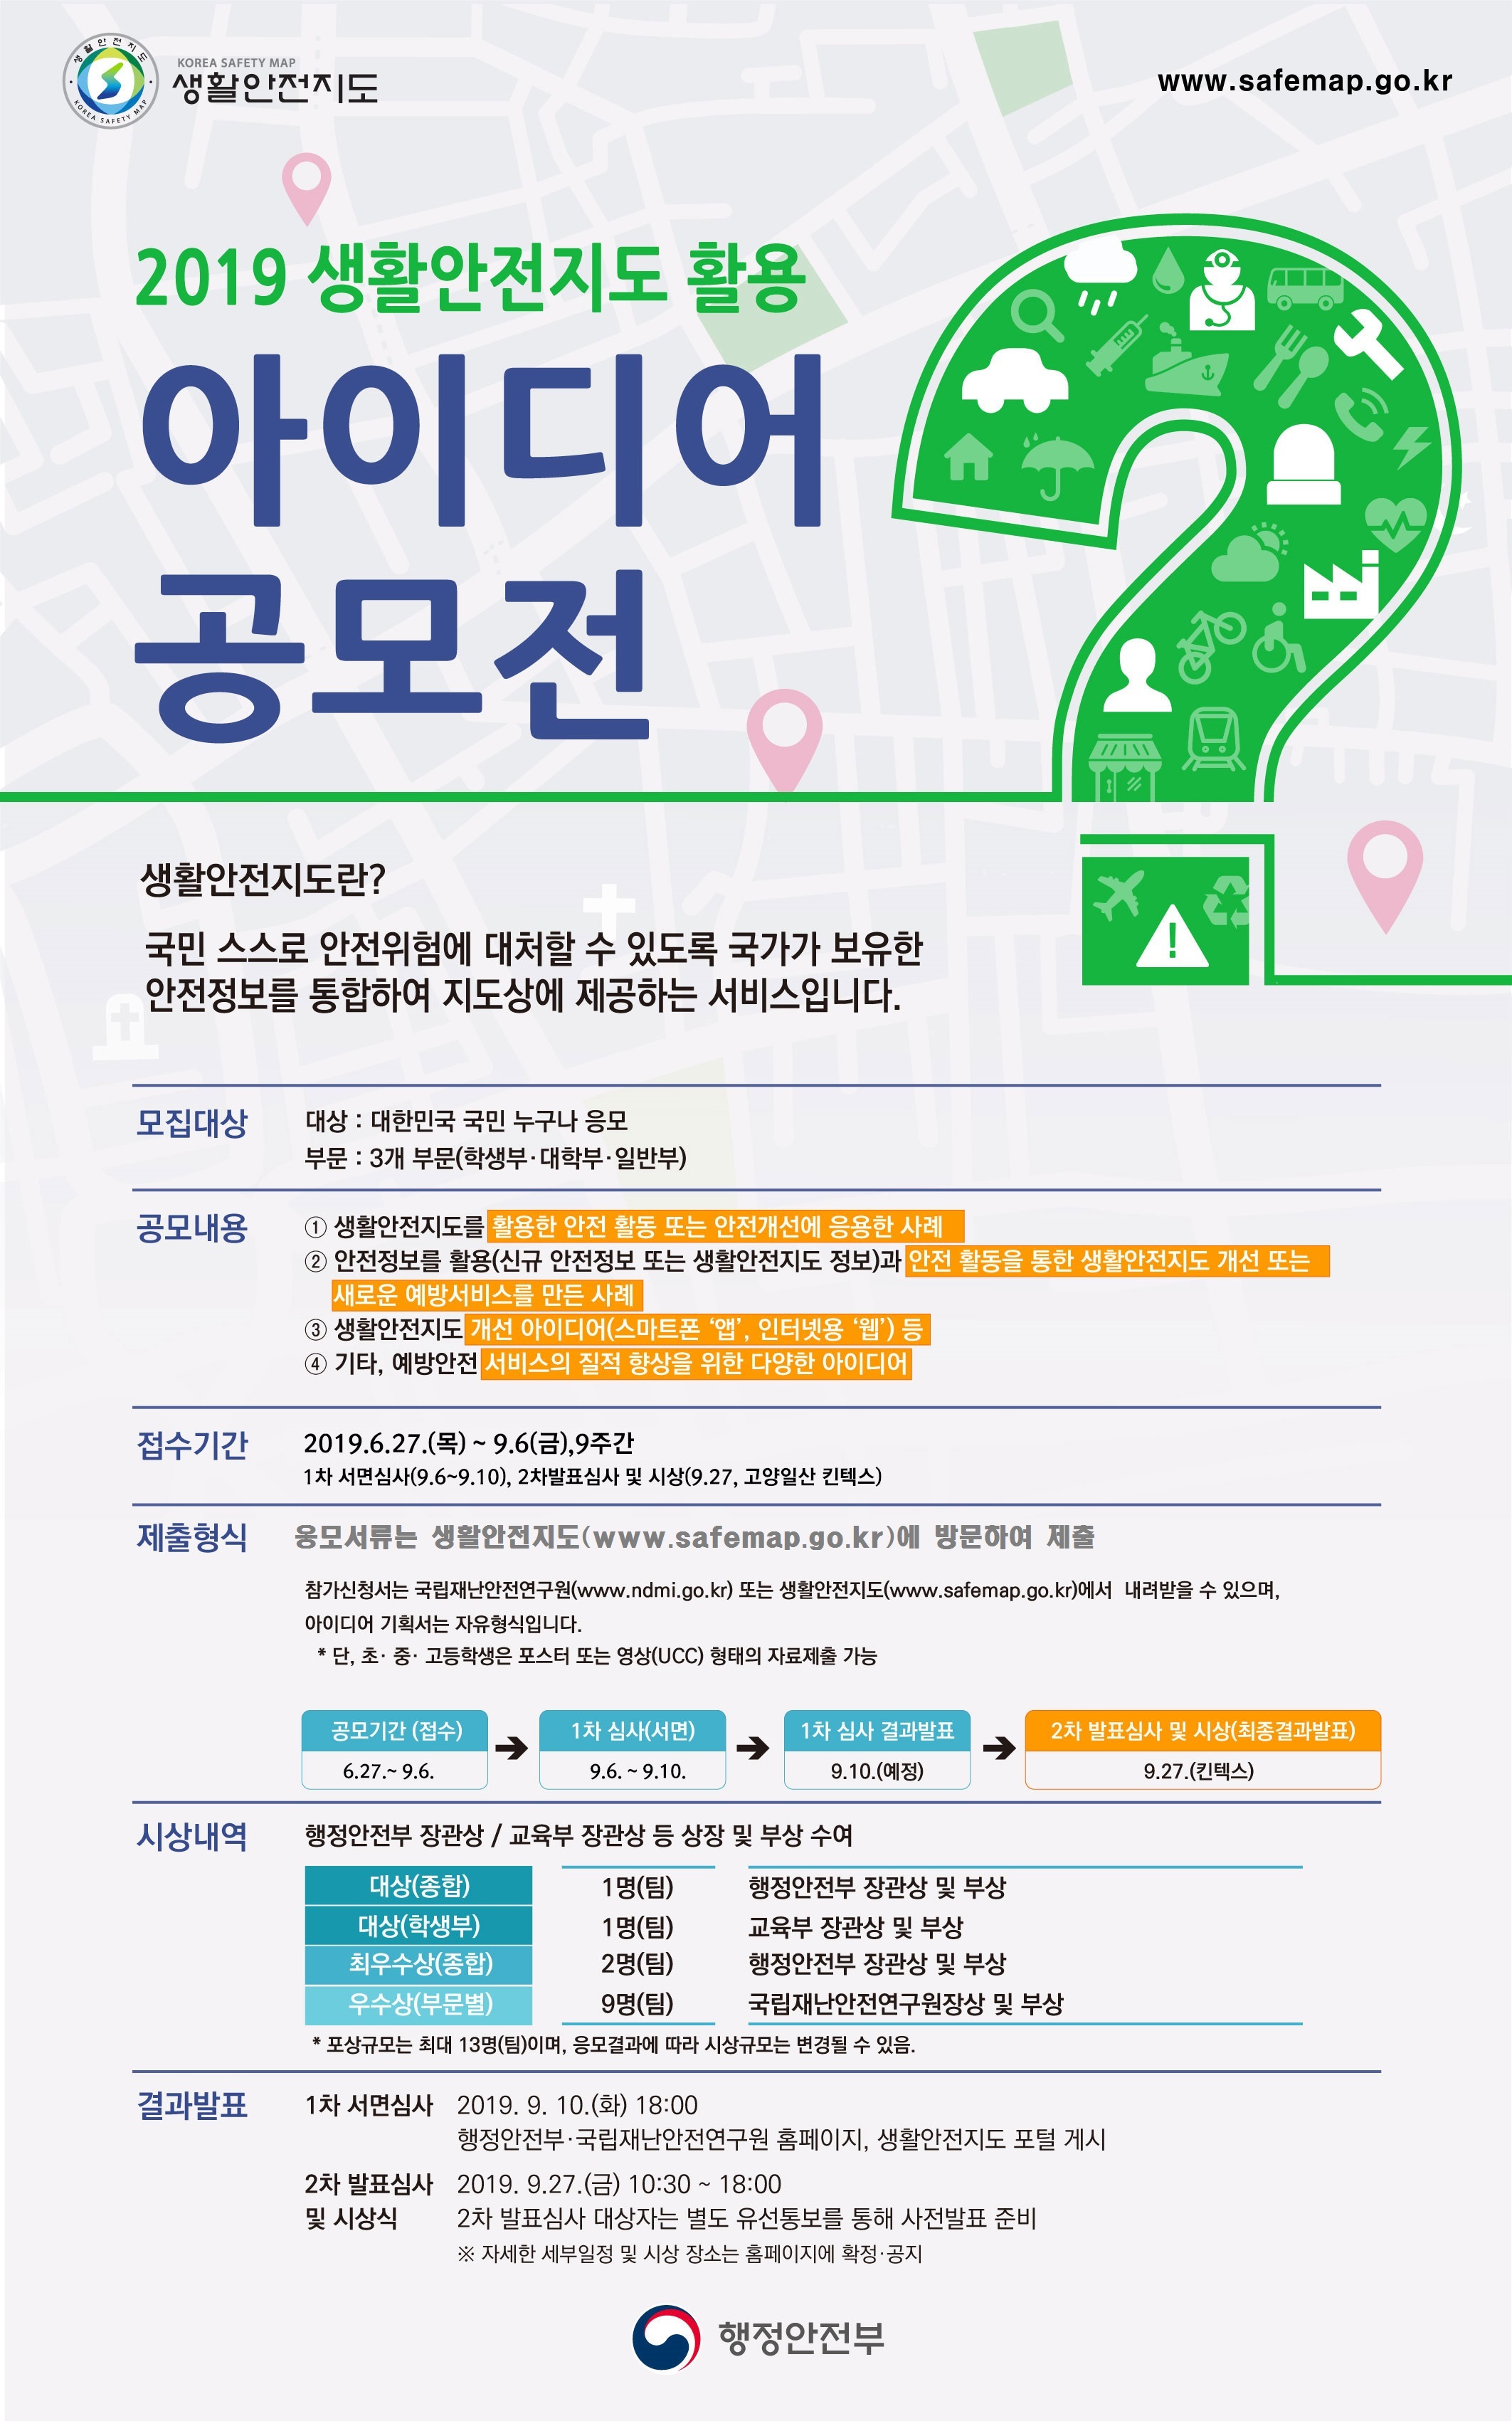 제6회 2019 생활안전지도 아이디어 공모전 개최(9.6까지 기간연장)